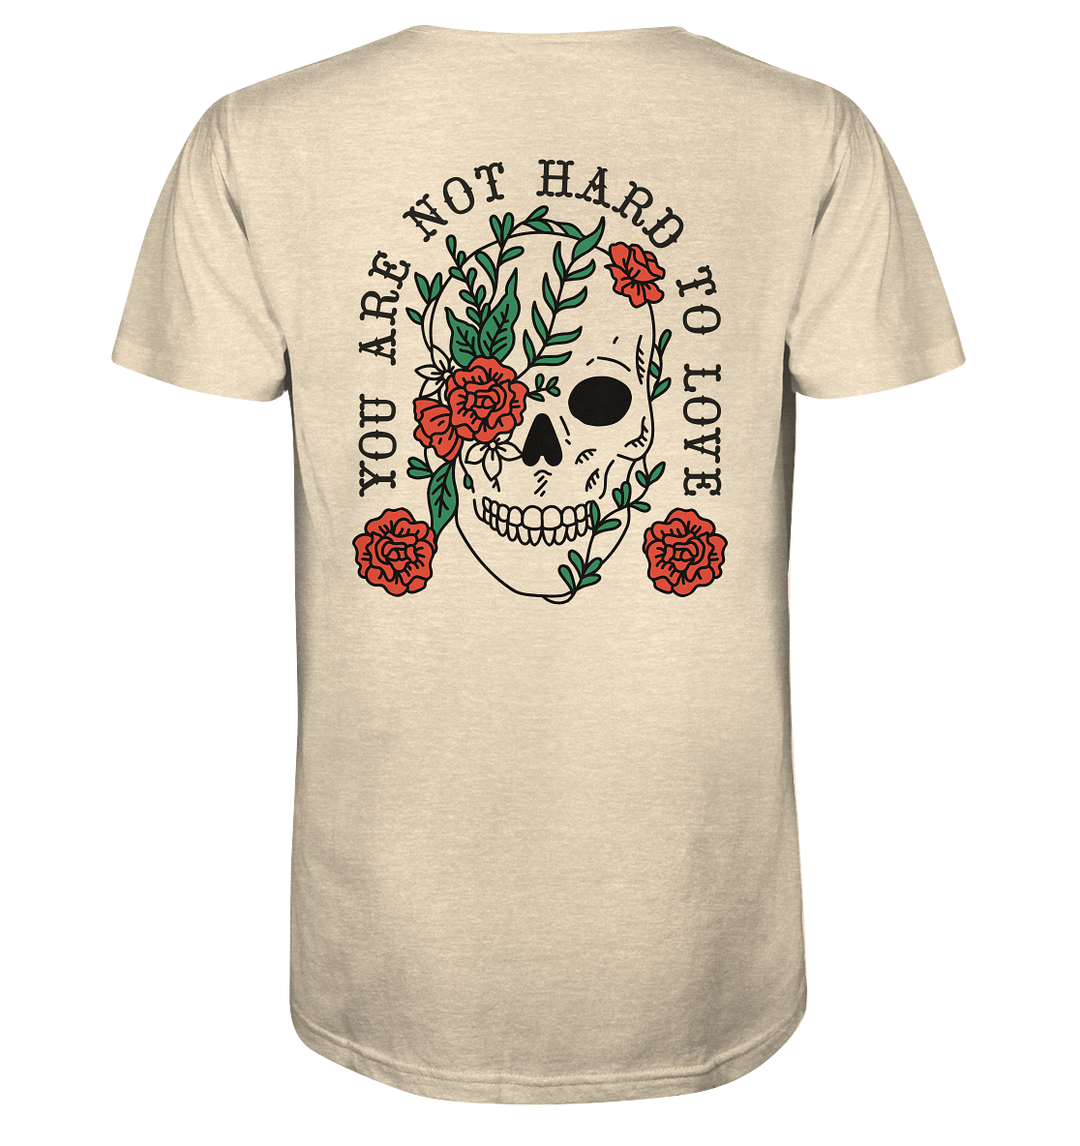 Not Hard to Love Herren - Organic Shirt Natural Raw Herren Shirt Motiv Organic Shirt True Statement